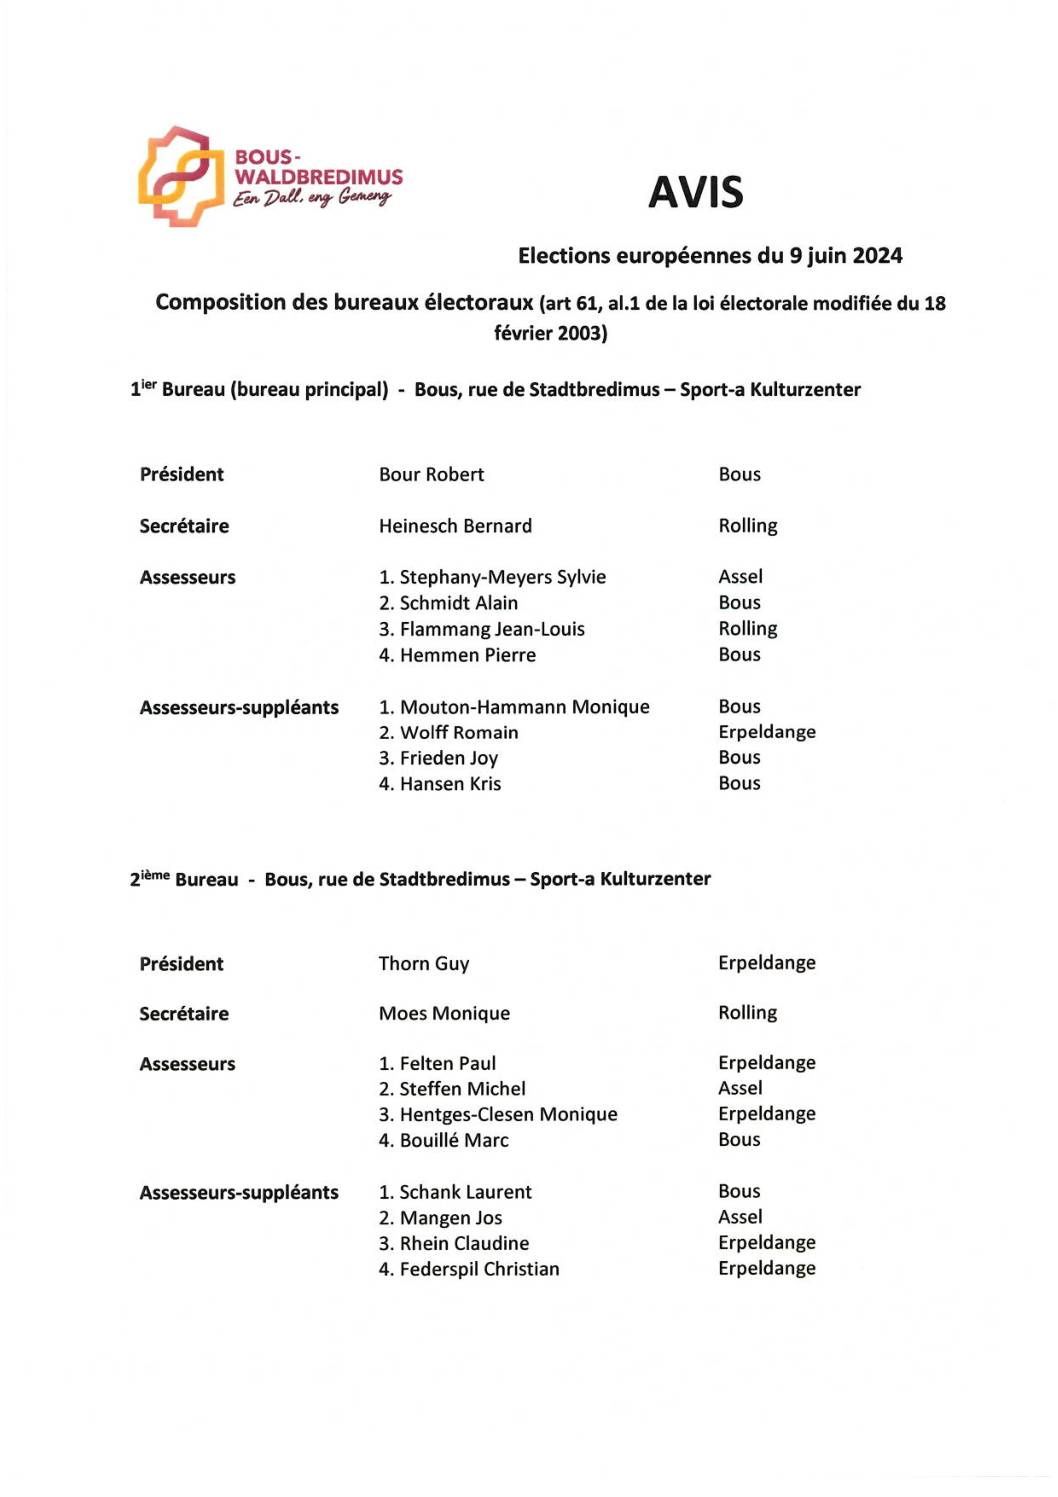 Avis Elections européennes - Composition des bureaux électoraux